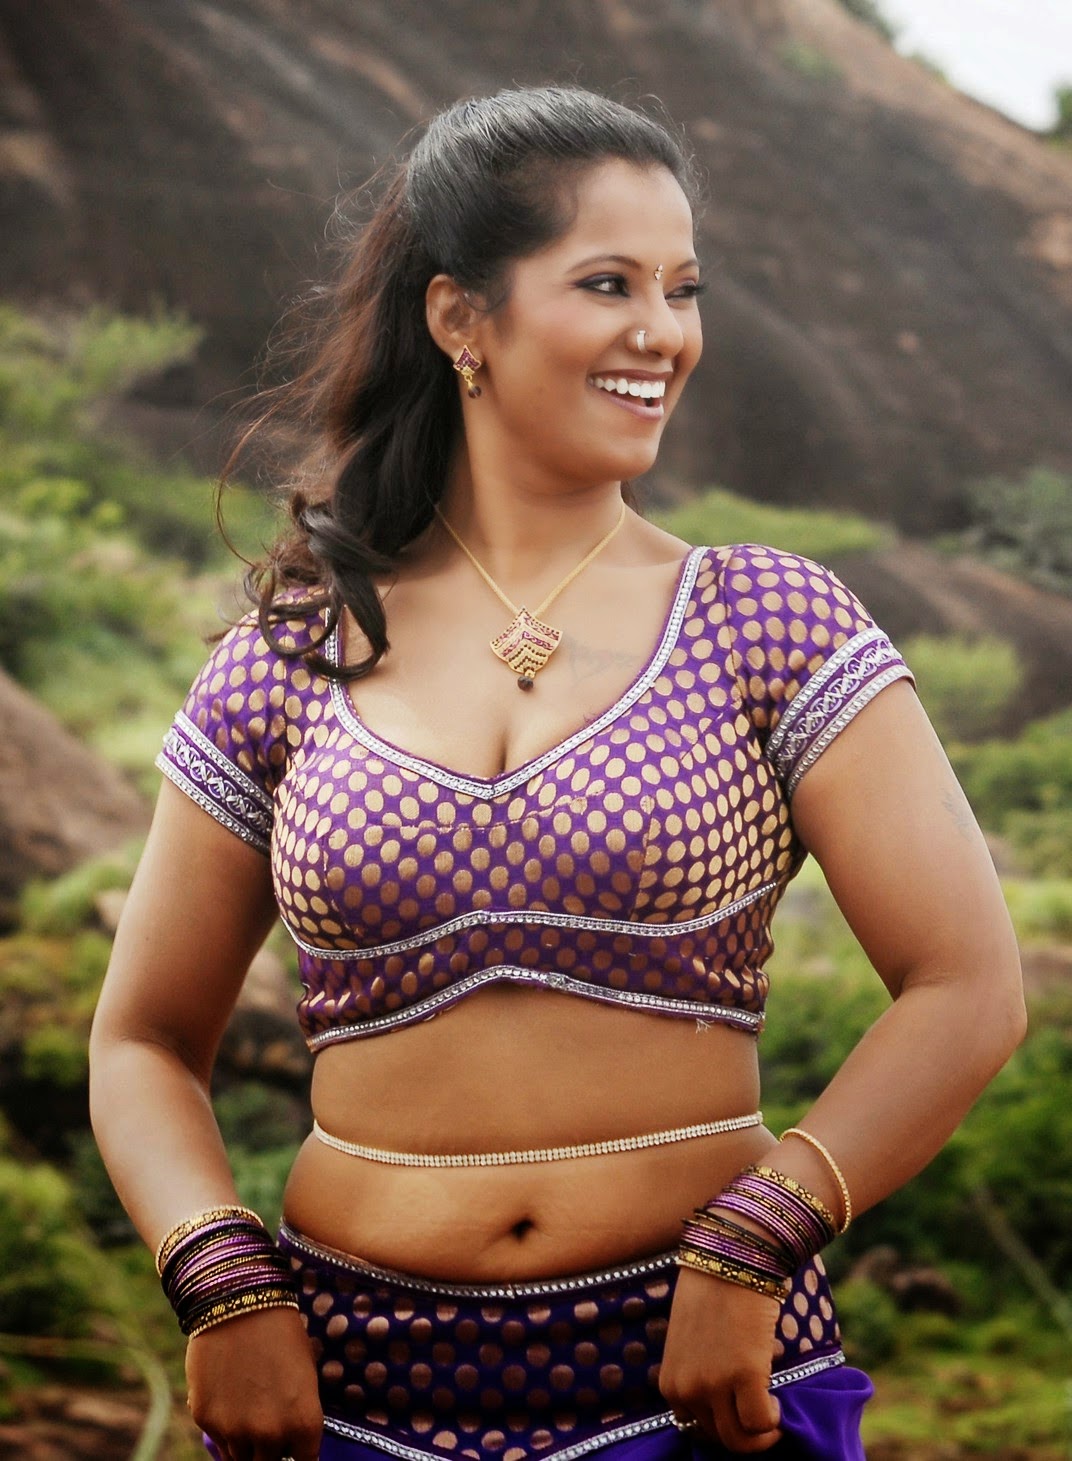 Hot Tamil Actress / Tamil Actress Hot Photos 2012: Meenakshi